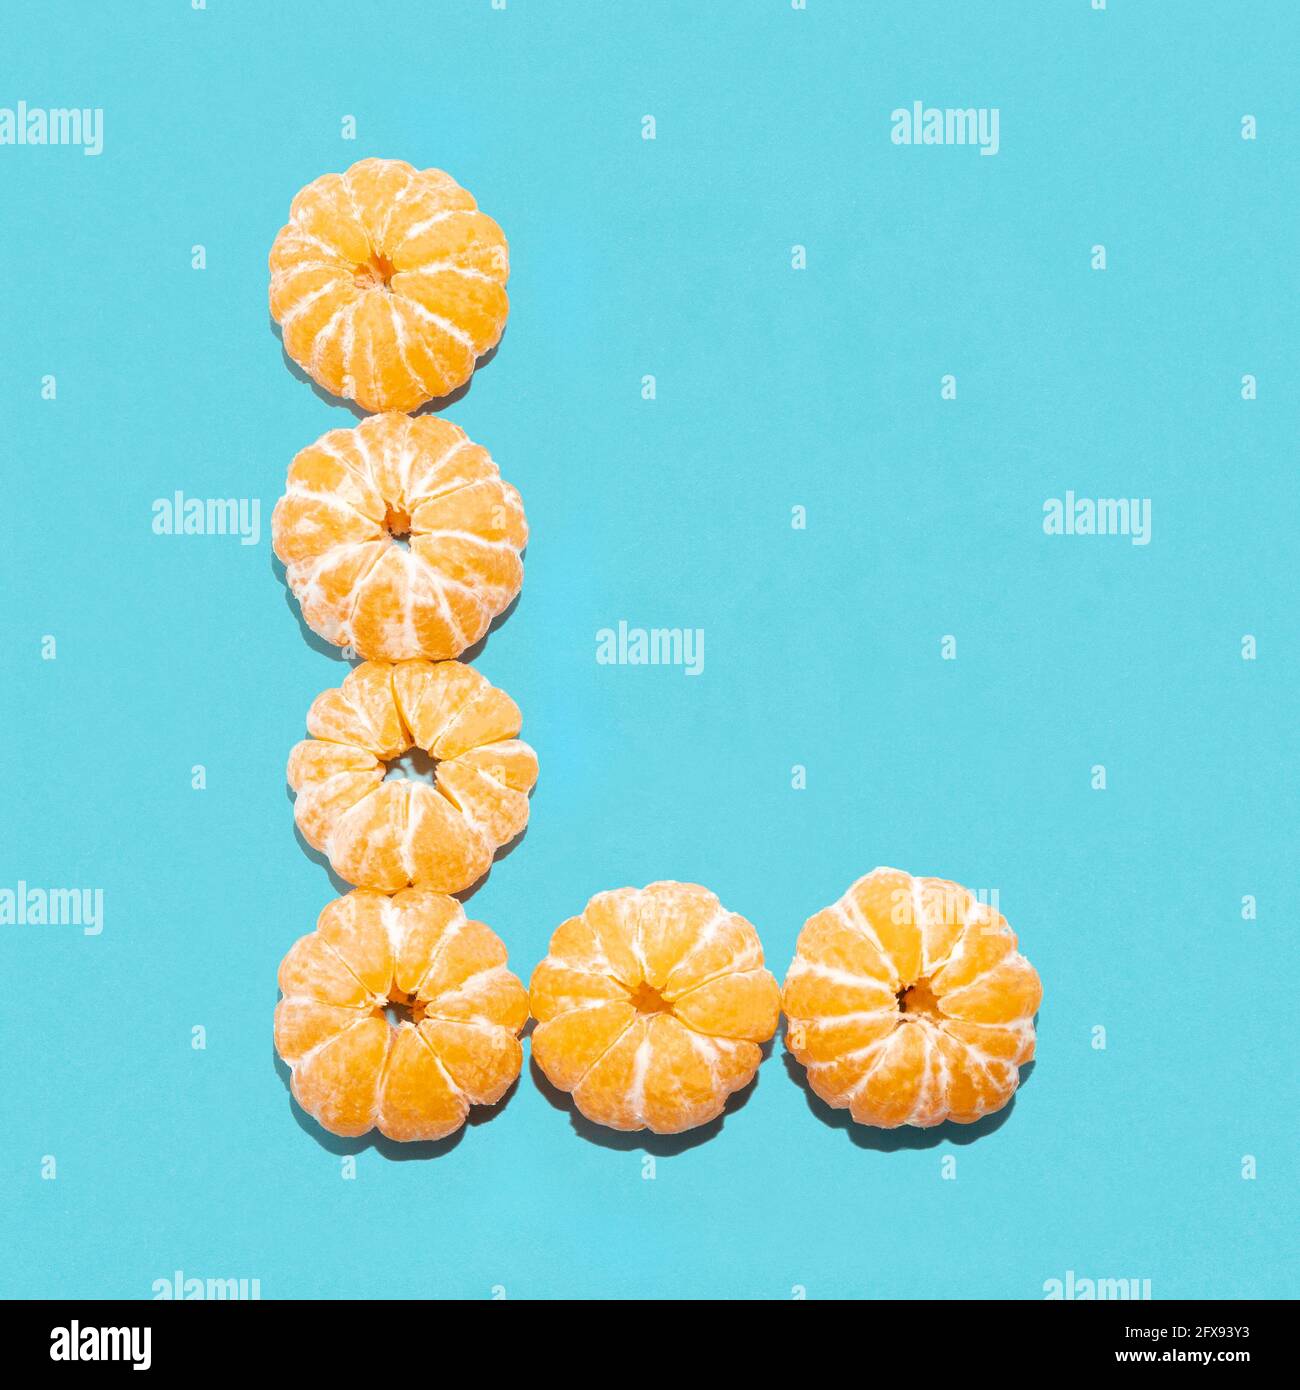 Mise en page créative de la lettre L de mandarines pelées sur fond bleu. Mise à plat. Banque D'Images